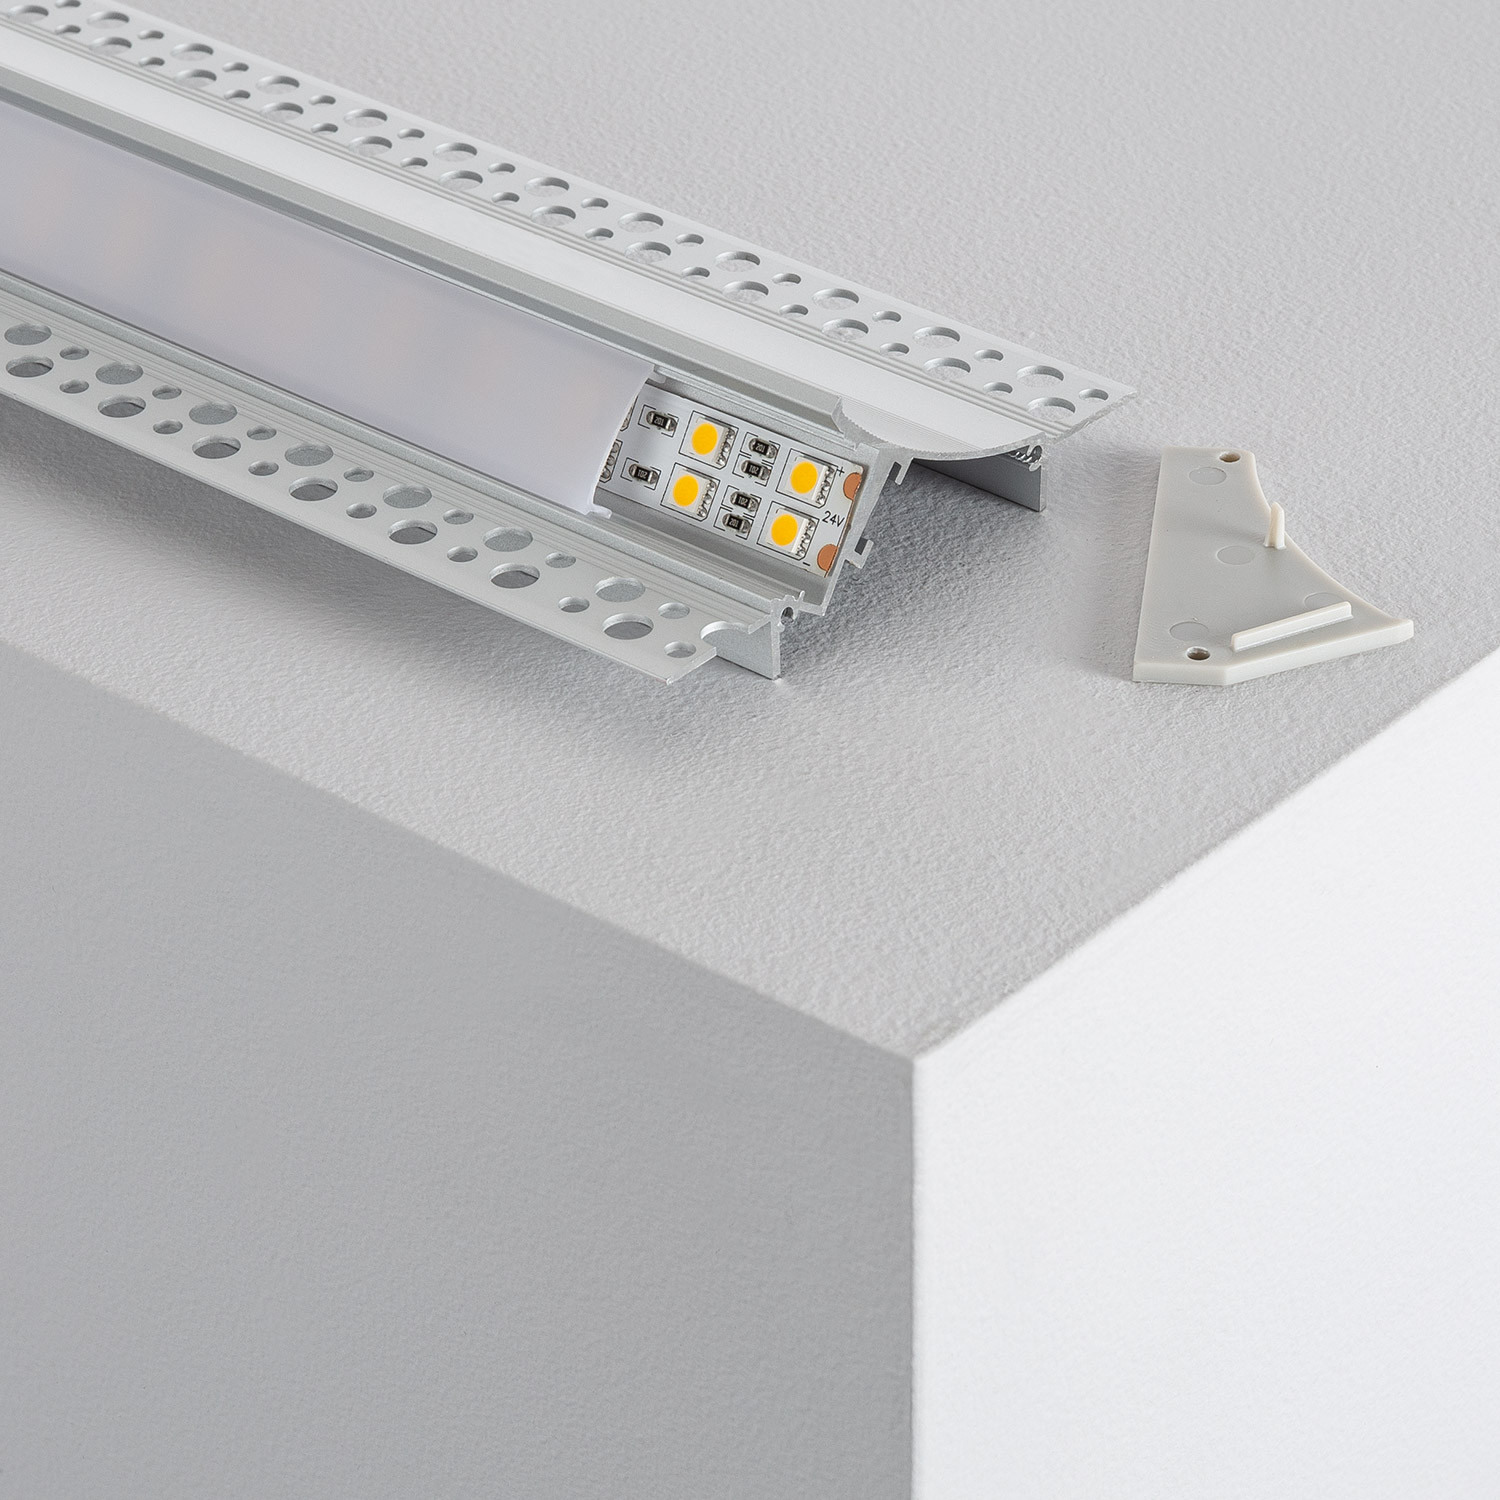 volwassen sieraden Afleiden Inbouw aluminium profiel voor gips / gipsplaten met doorlopende cover voor  LED Strip tot 20mm - Ledkia